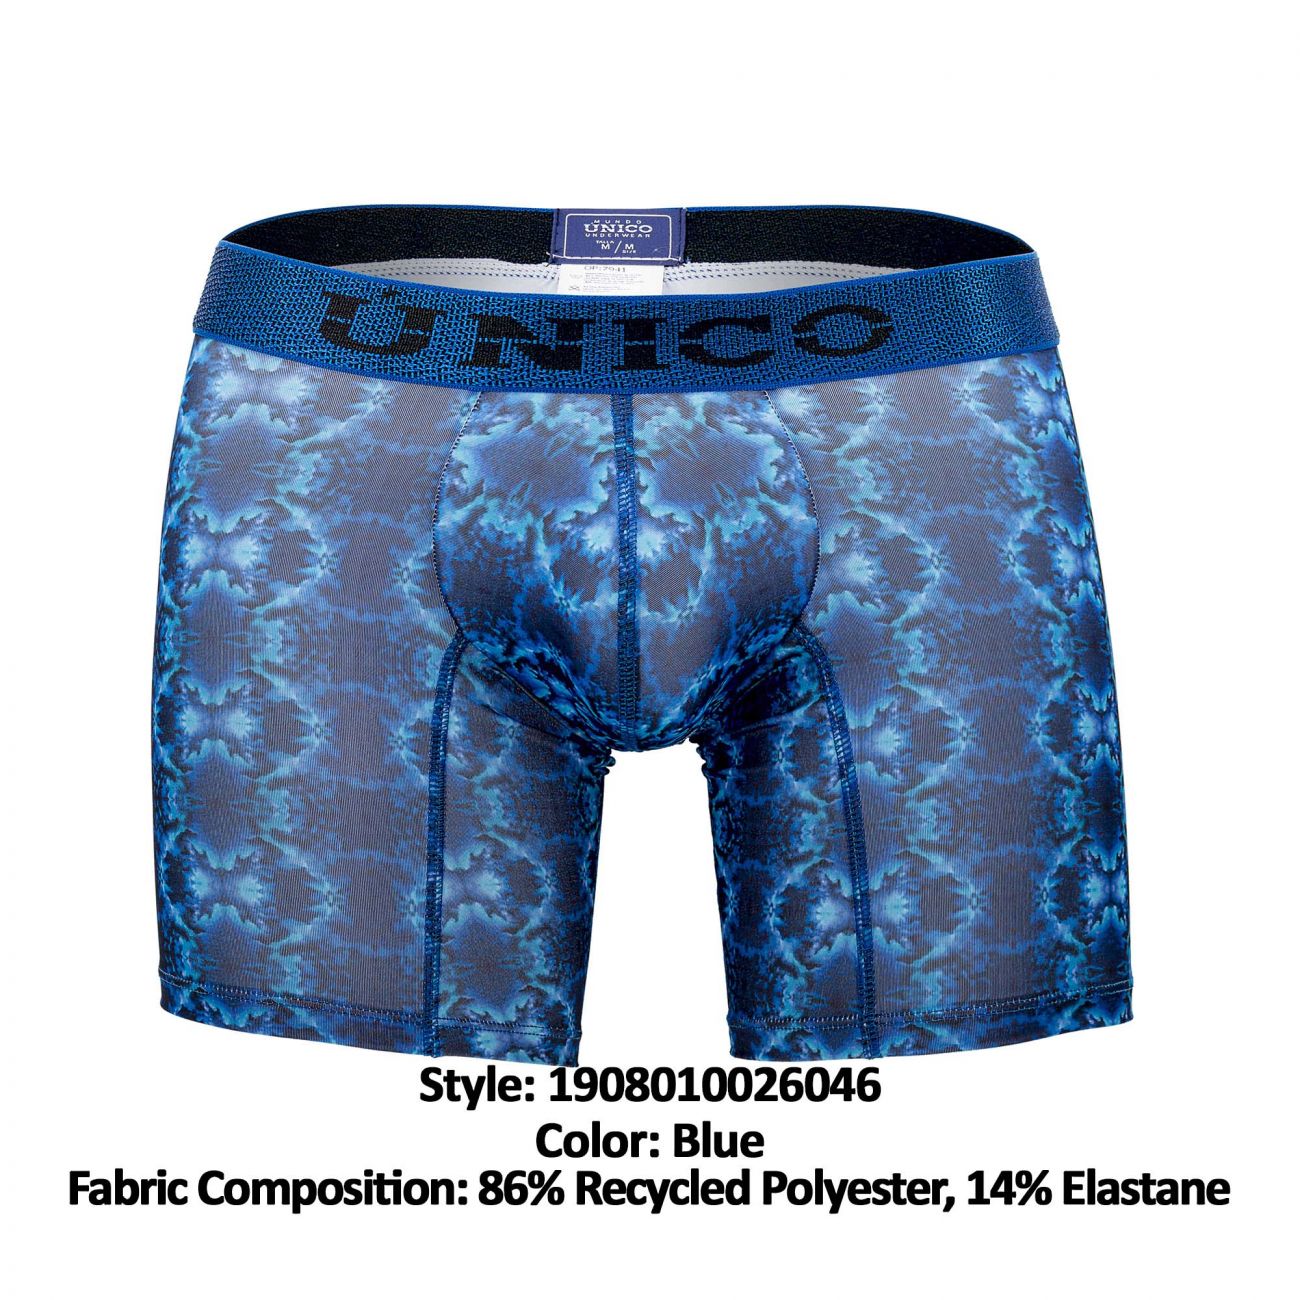 Unico 1908010026046 Boxer Briefs Bruma Blue Printed